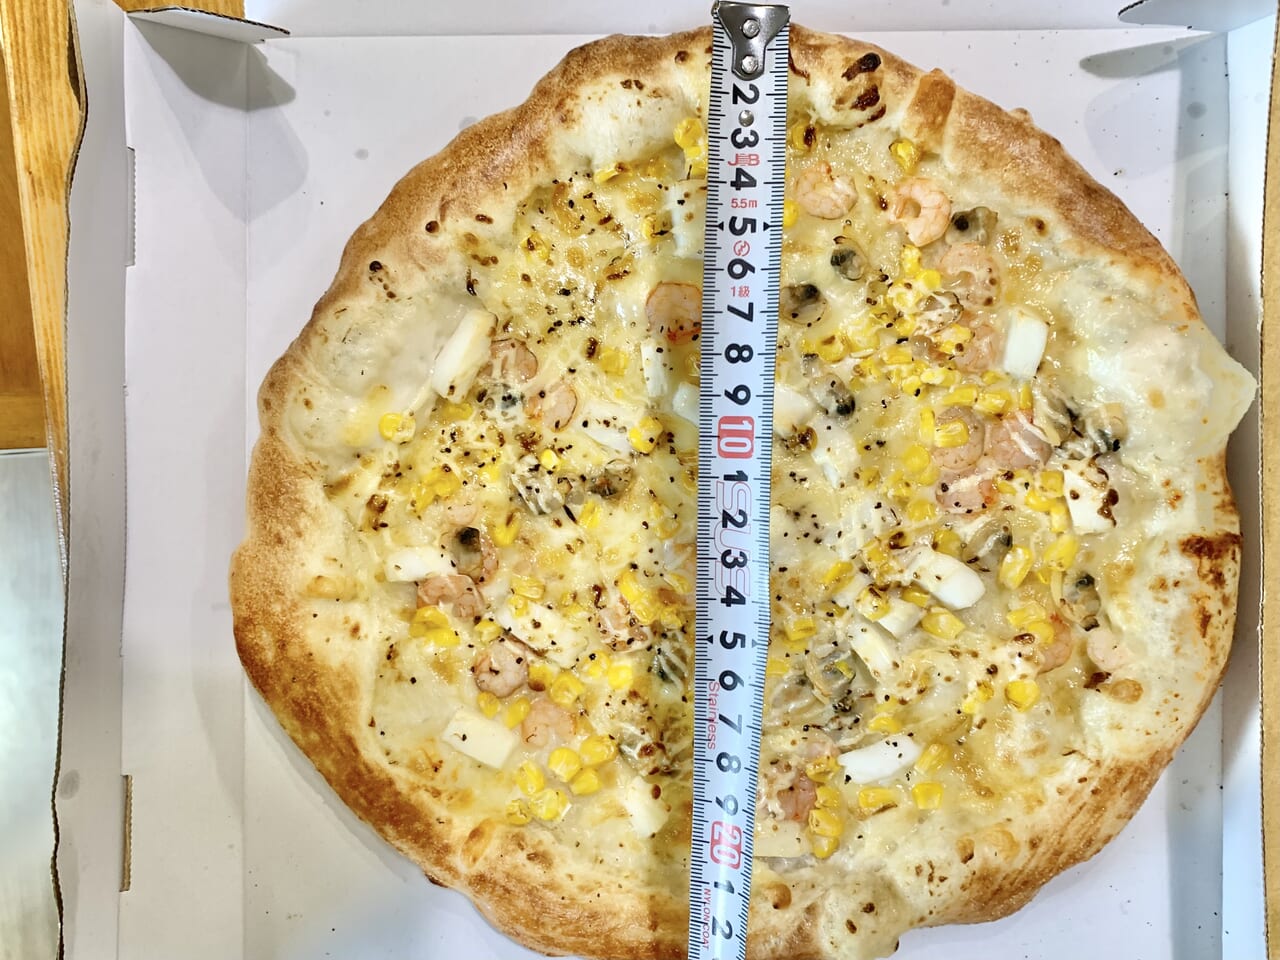 ピザの大きさ